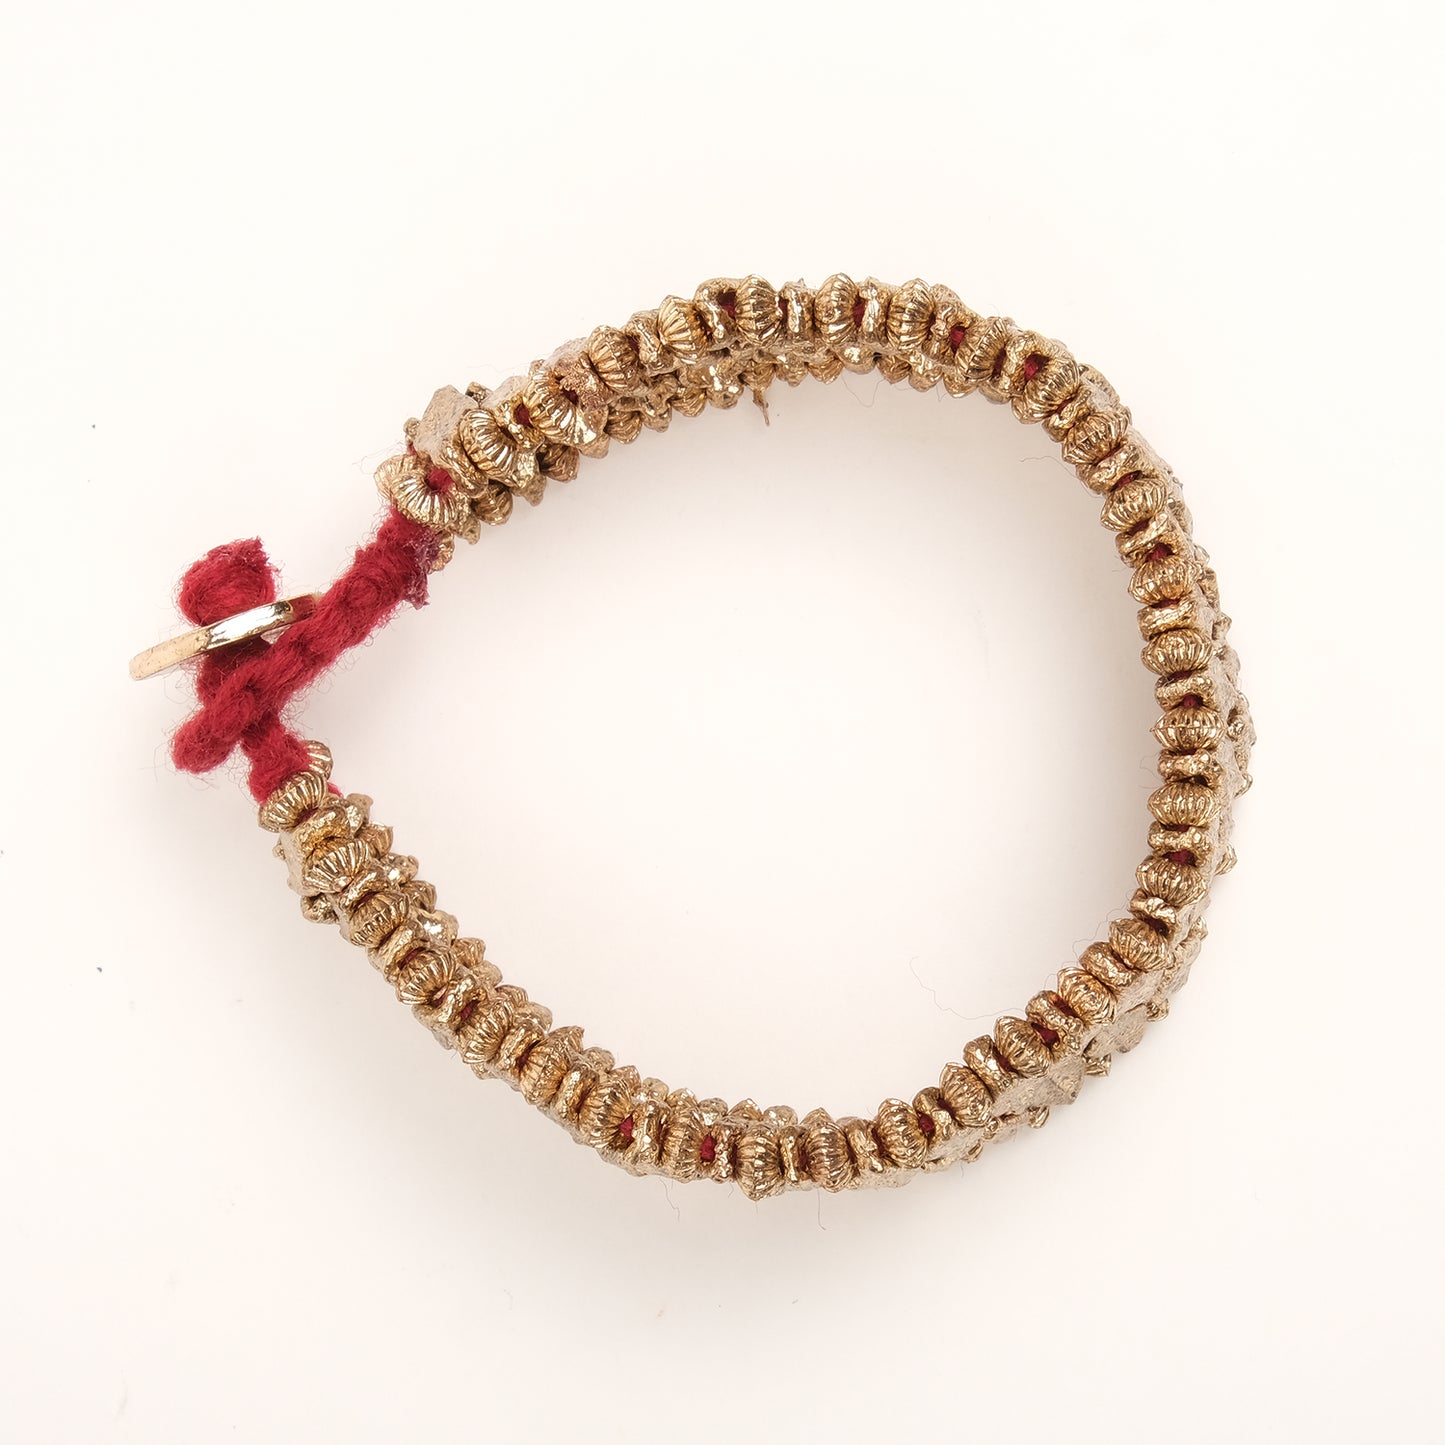 Vintage Elegance Beads Bracelet